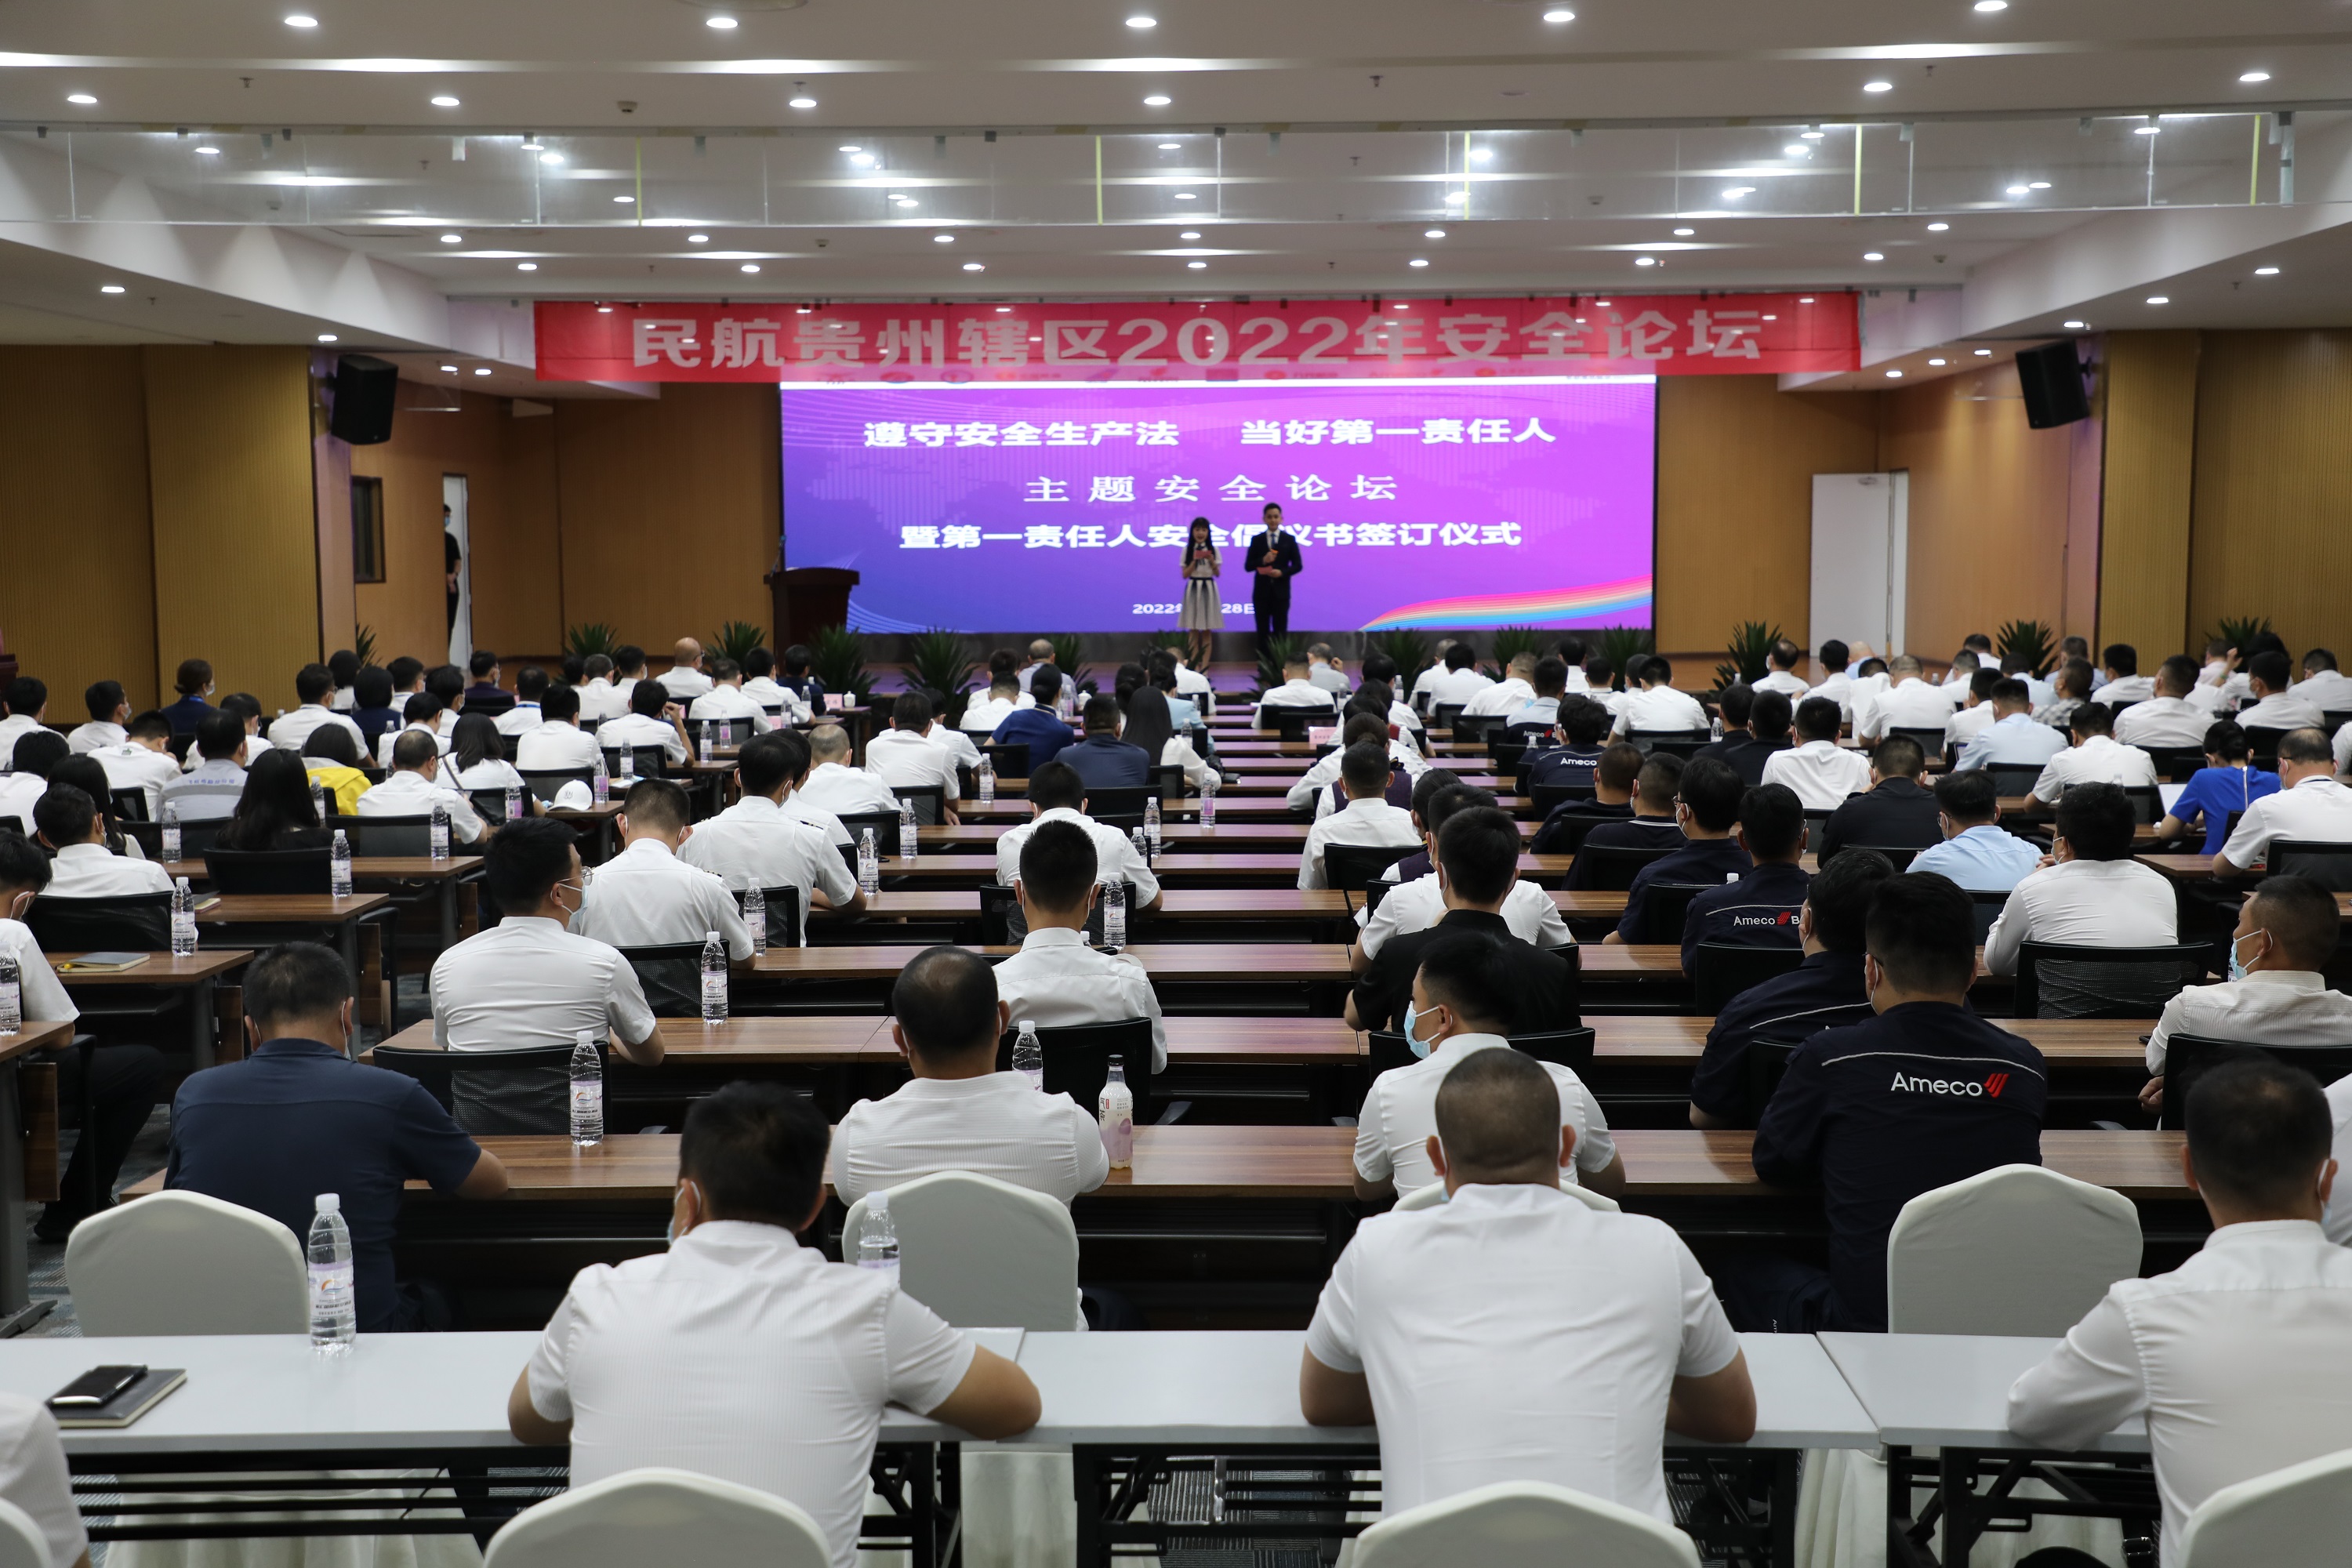 贵州空管分局参加民航贵州辖区2022年安全论坛